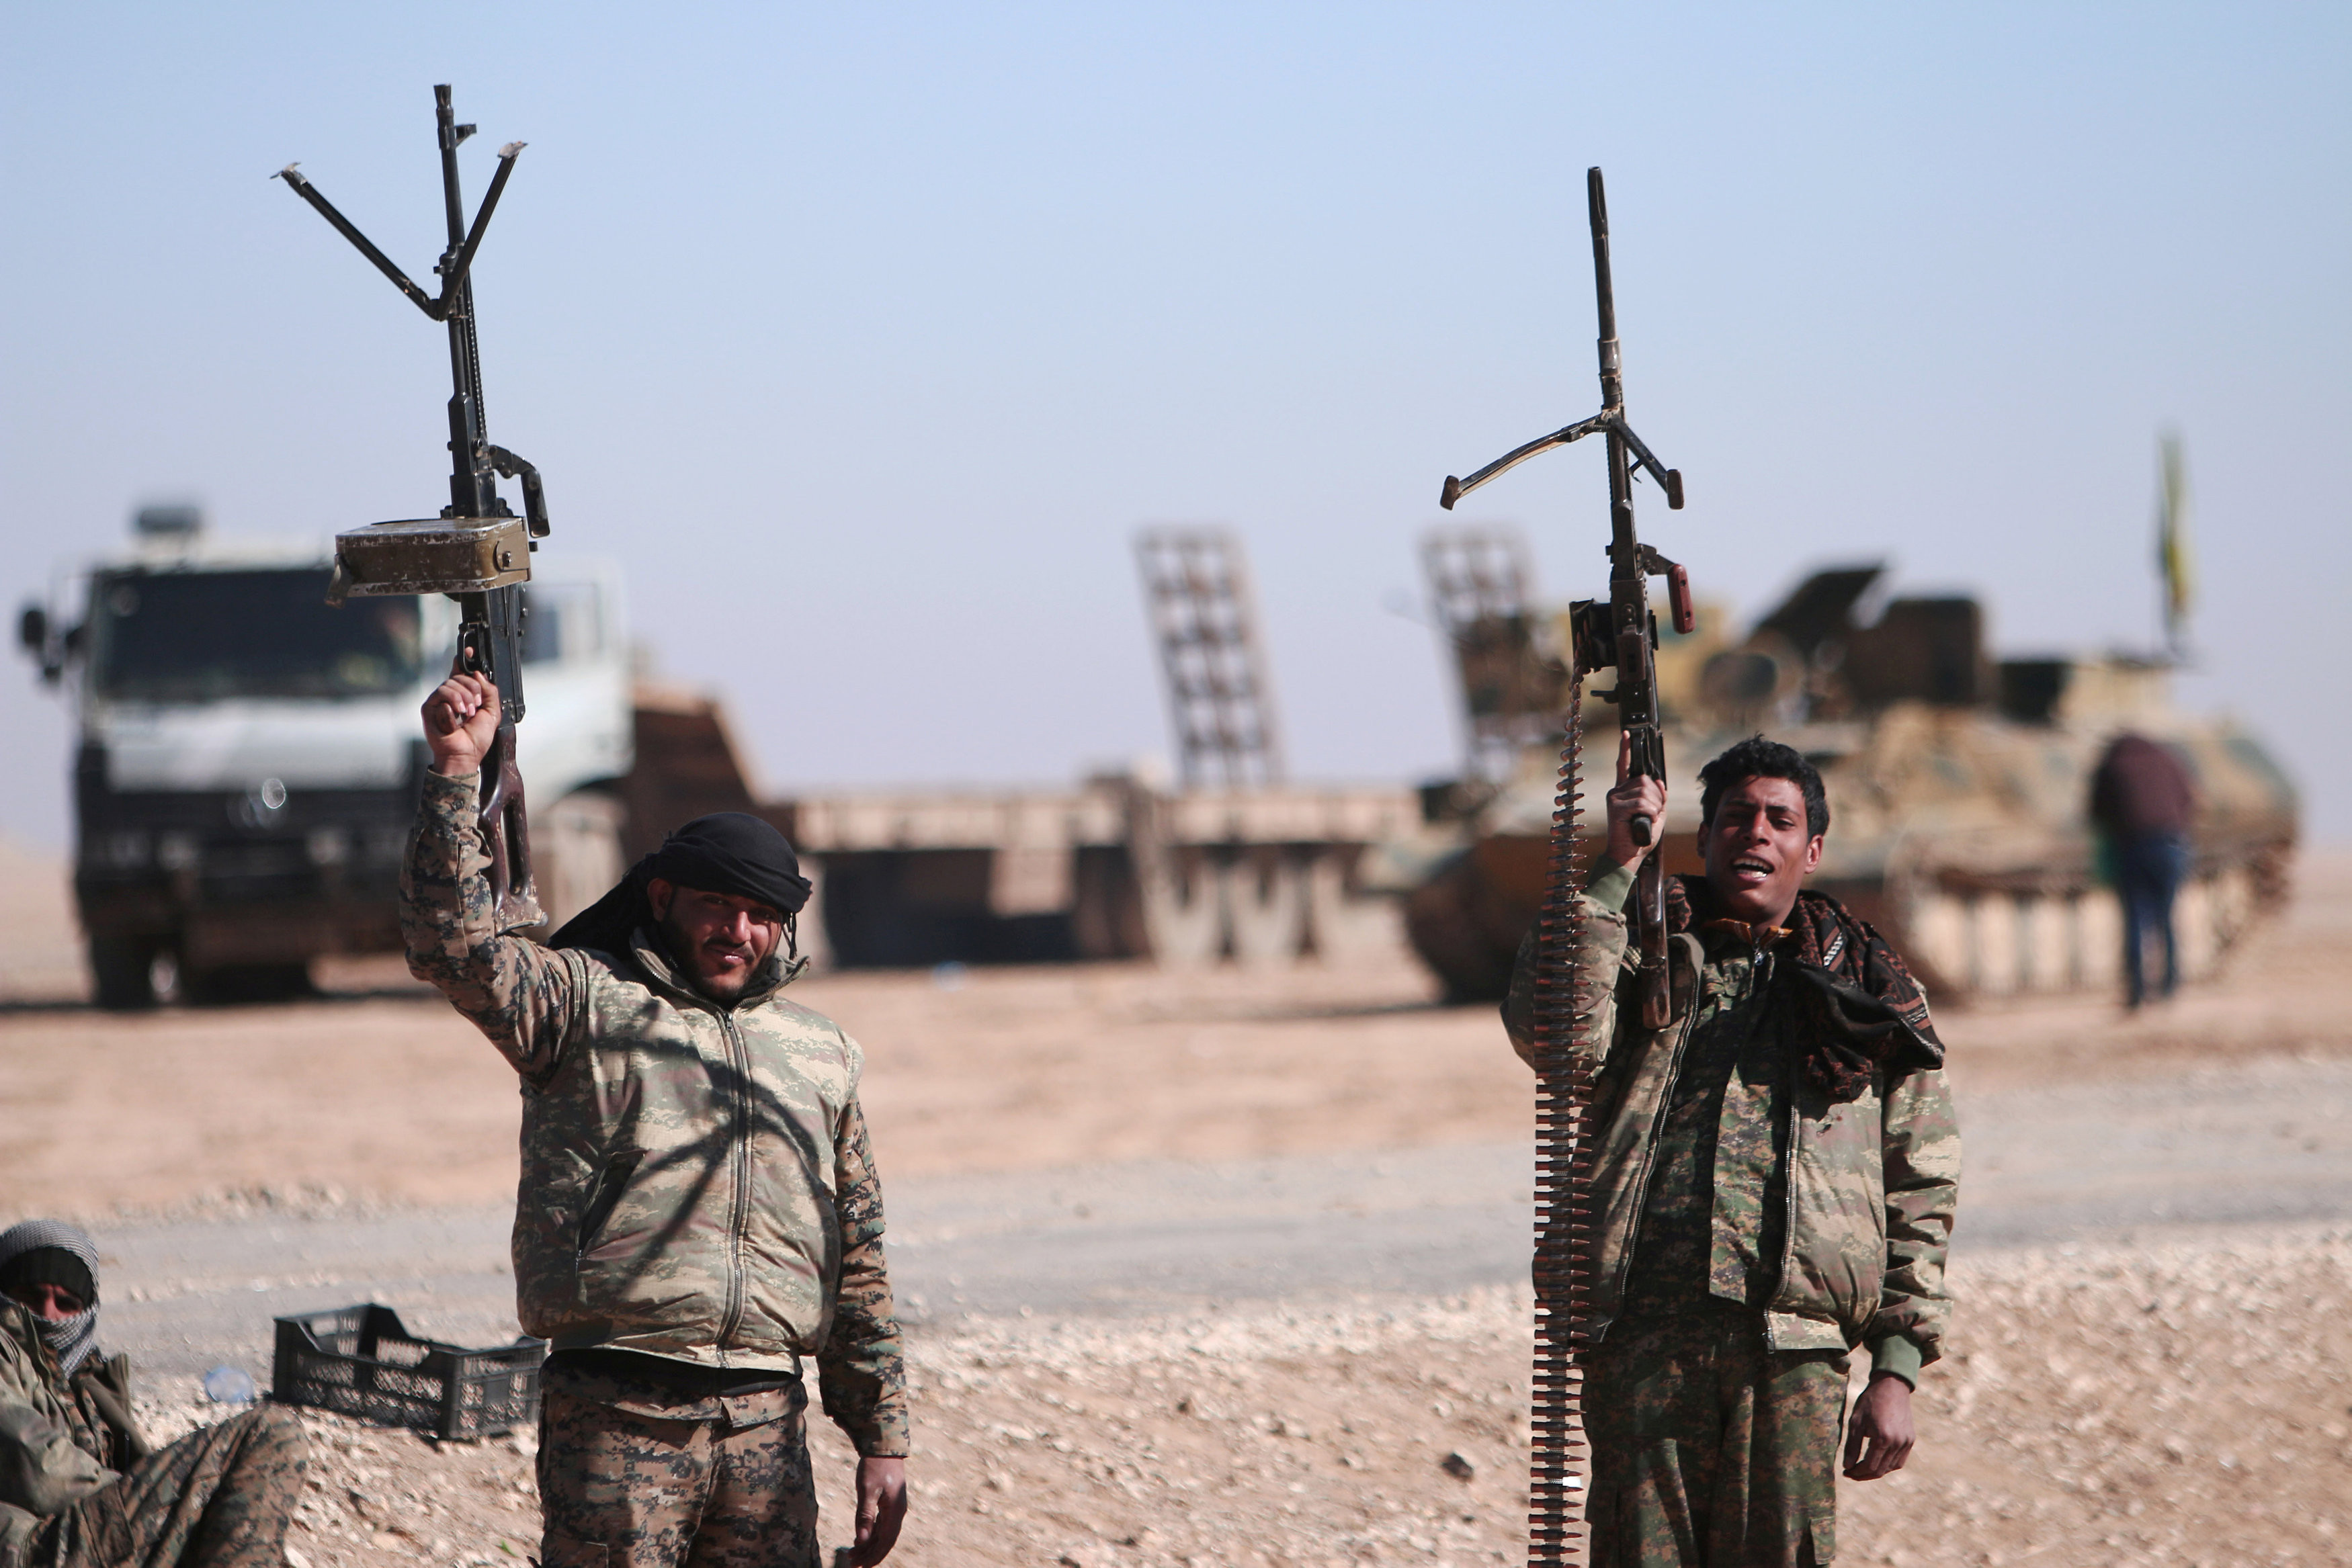 &nbsp;Сегодня силы коалиции проводят операцию по освобождению&nbsp;города Ракка в Сирии от террористов. Фото: &copy;&nbsp;REUTERS/Rodi Said/File Photo